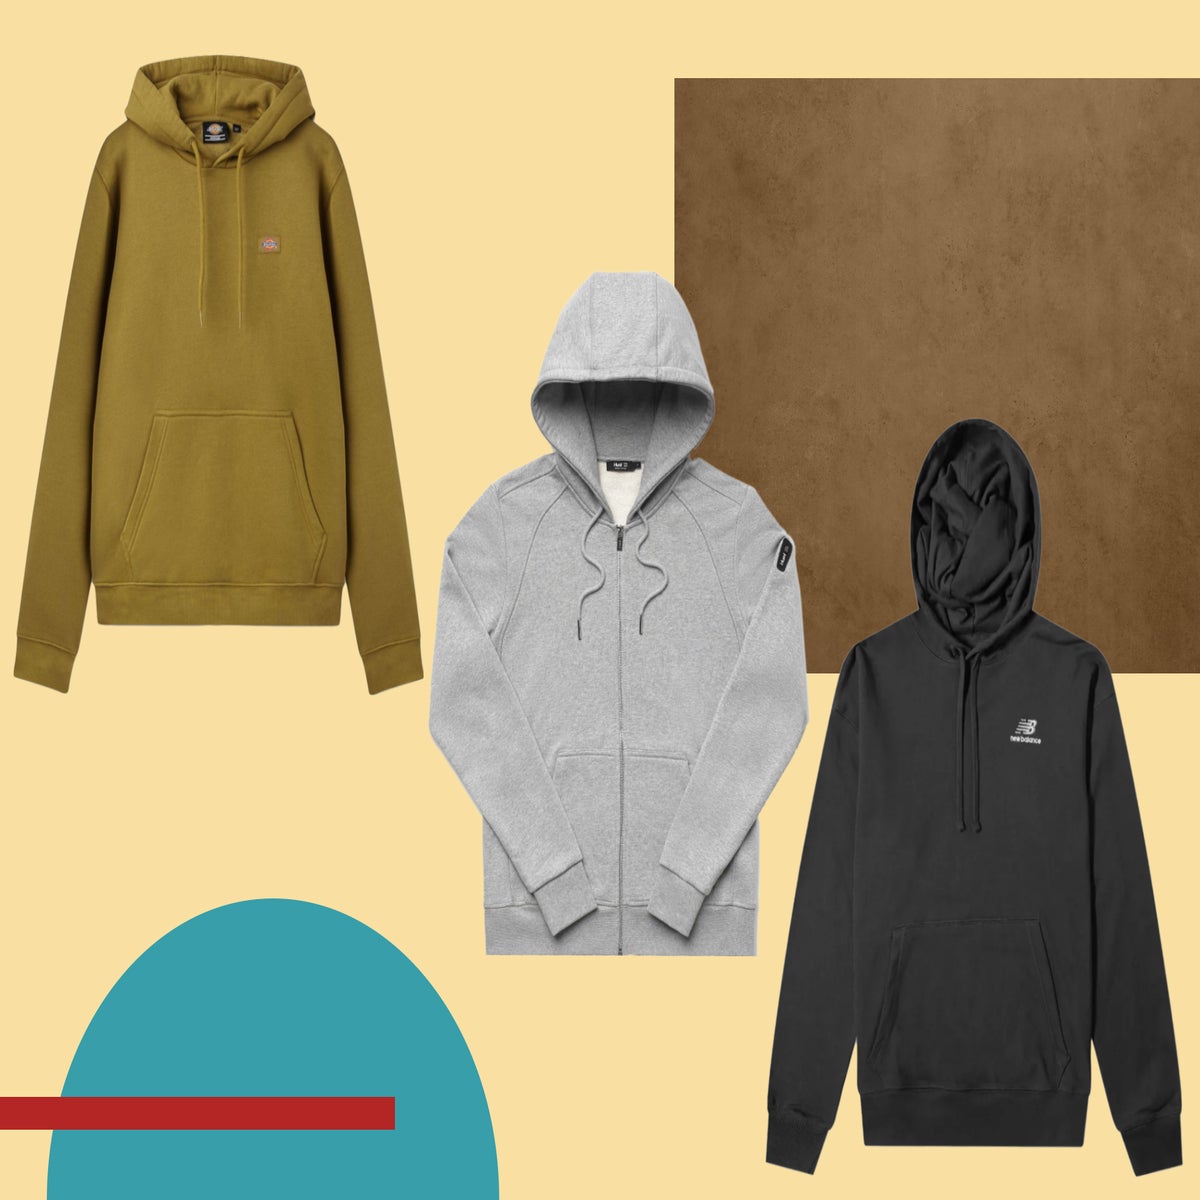 Mislukking Naar de waarheid humor Best hoodies for men 2022: From zip ups to pullovers | The Independent